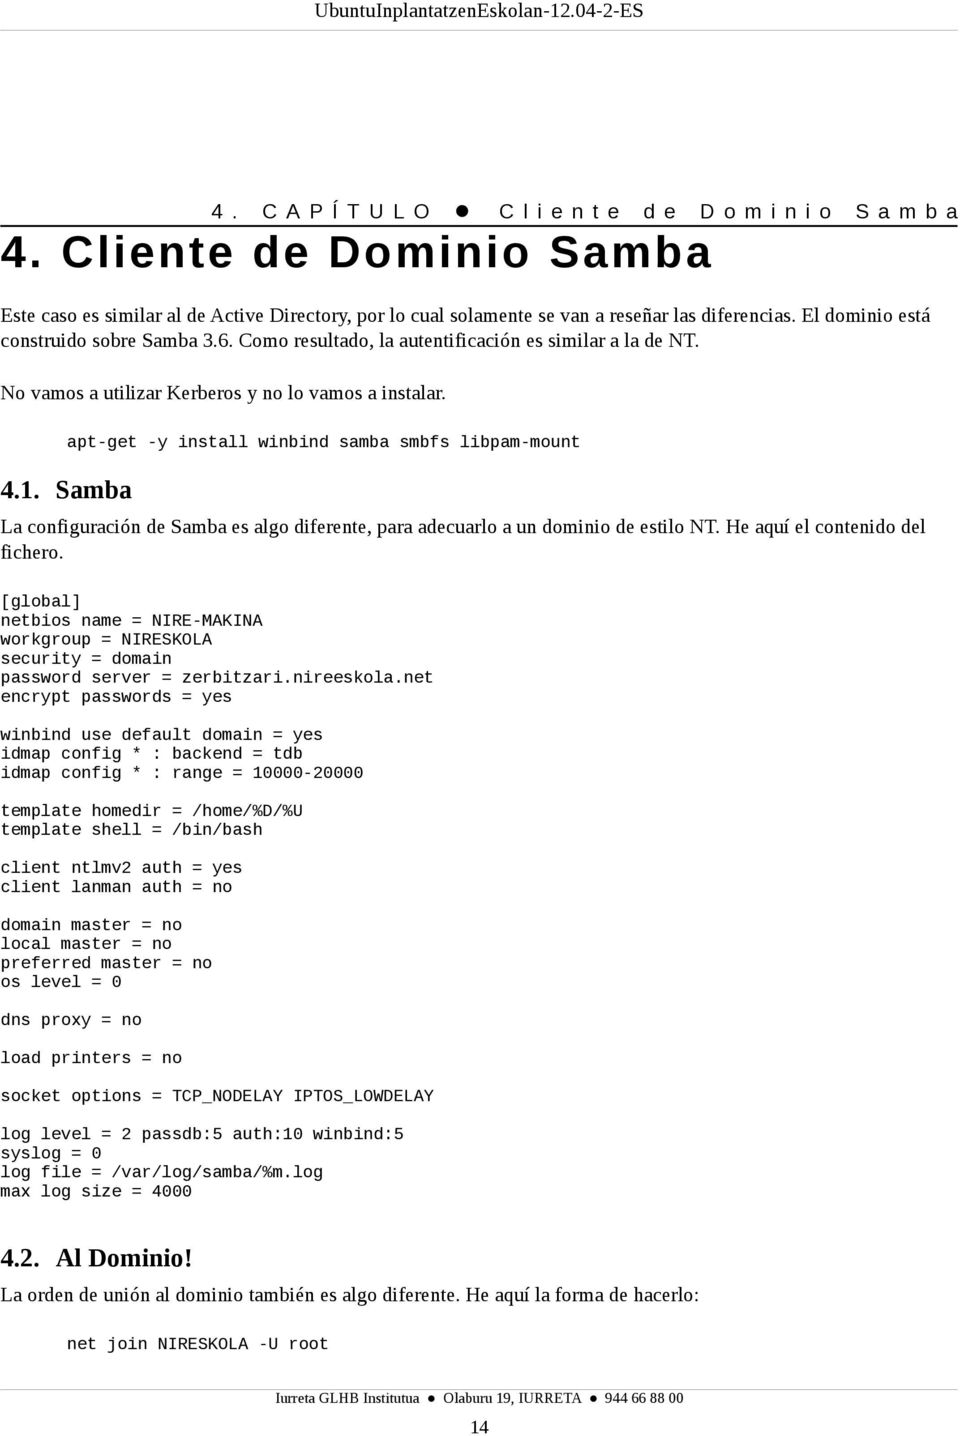 Samba apt-get -y install winbind samba smbfs libpam-mount La configuración de Samba es algo diferente, para adecuarlo a un dominio de estilo NT. He aquí el contenido del fichero.